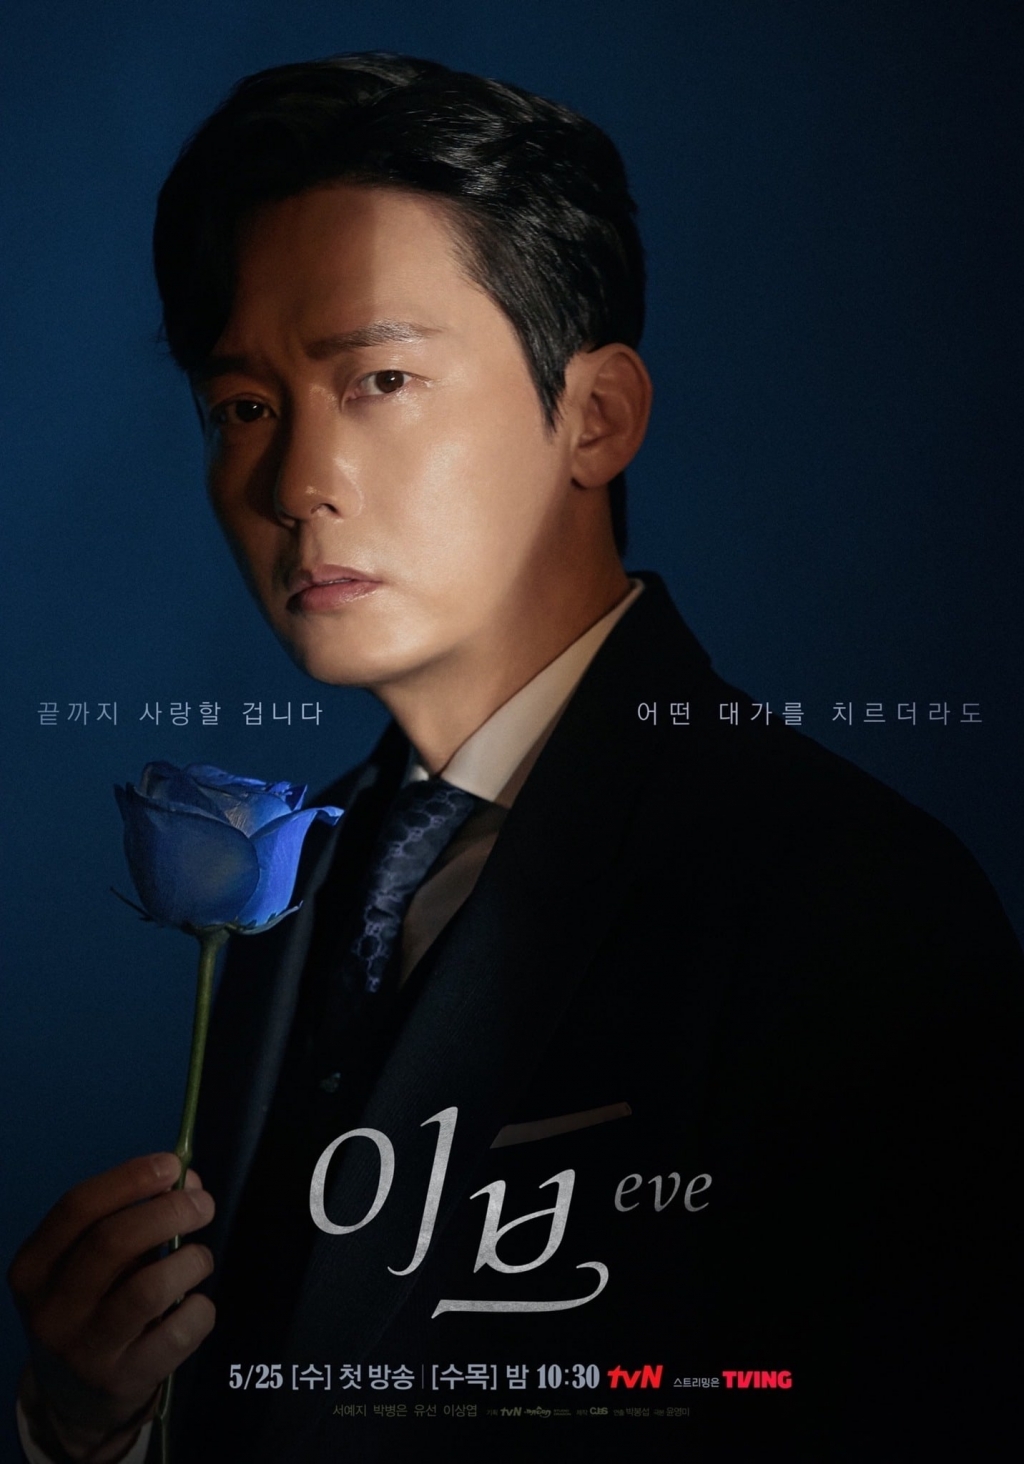 Poster phim mới ‘Eve’: Seo Ye Ji vừa quyến rũ vừa bí ẩn, hé lộ tham vọng muốn lợi dụng tình yêu để báo thù